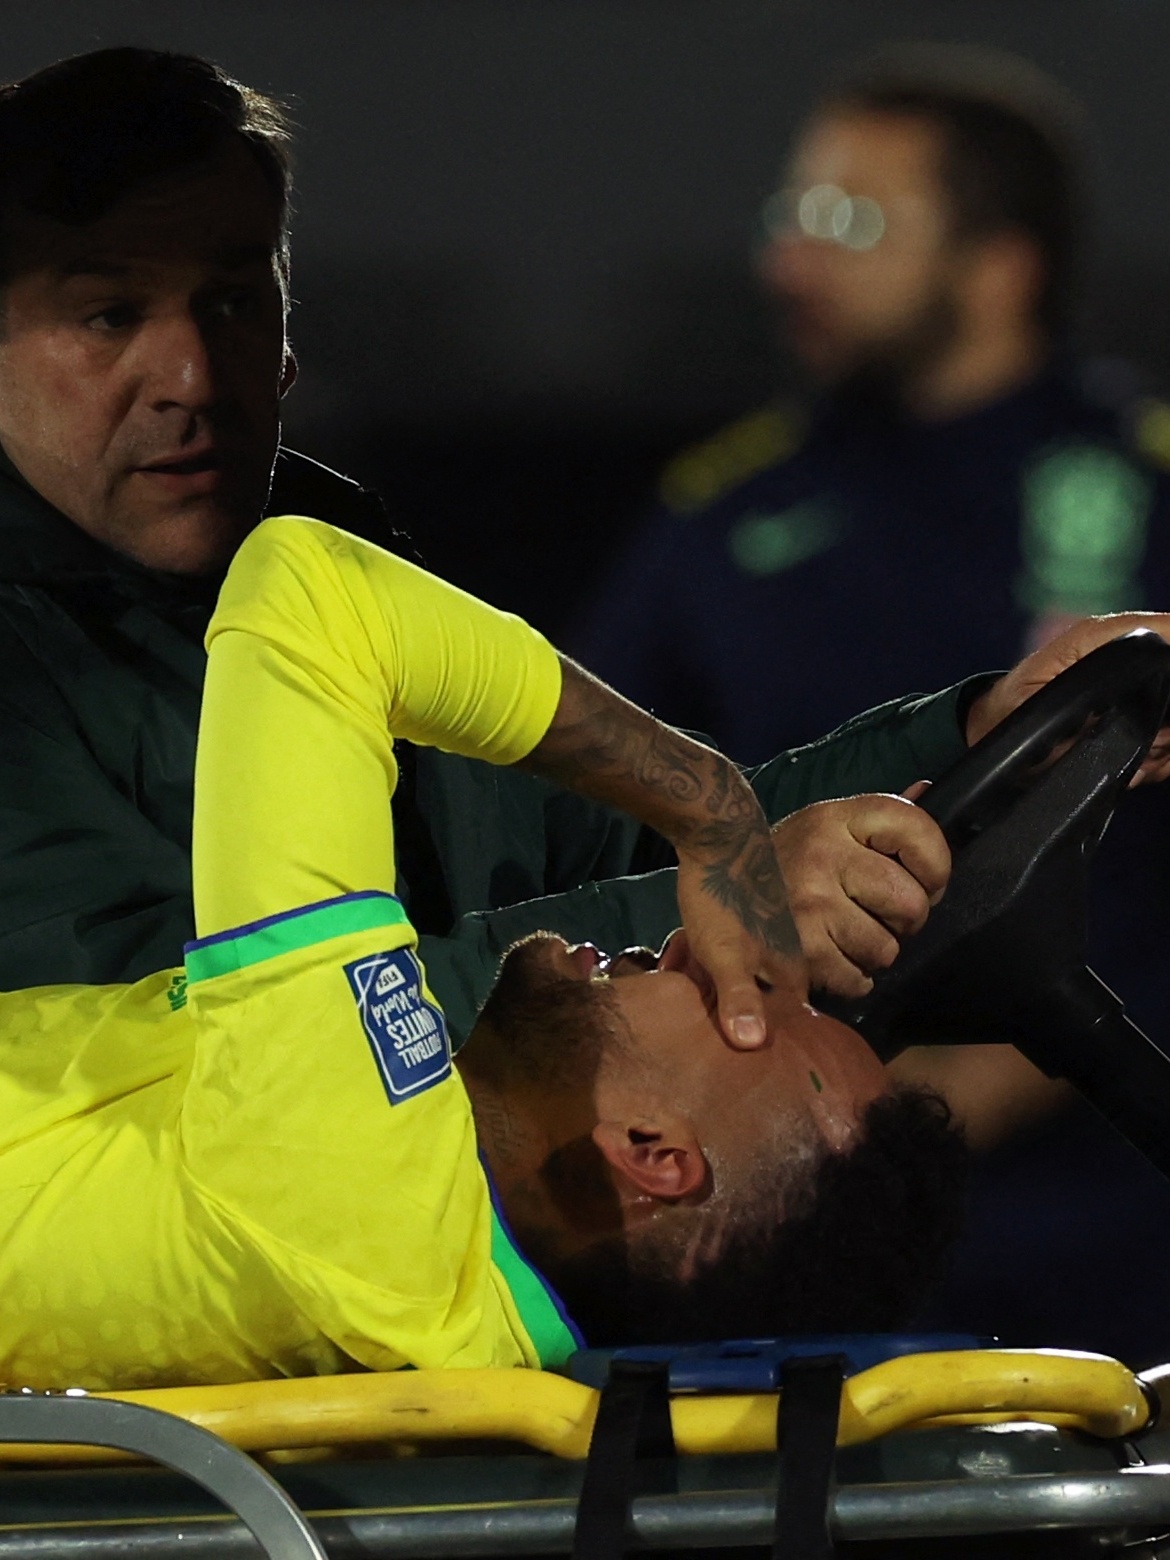 Brasil não cria nada, leva olé do Uruguai e vê lesão de Neymar assombrar